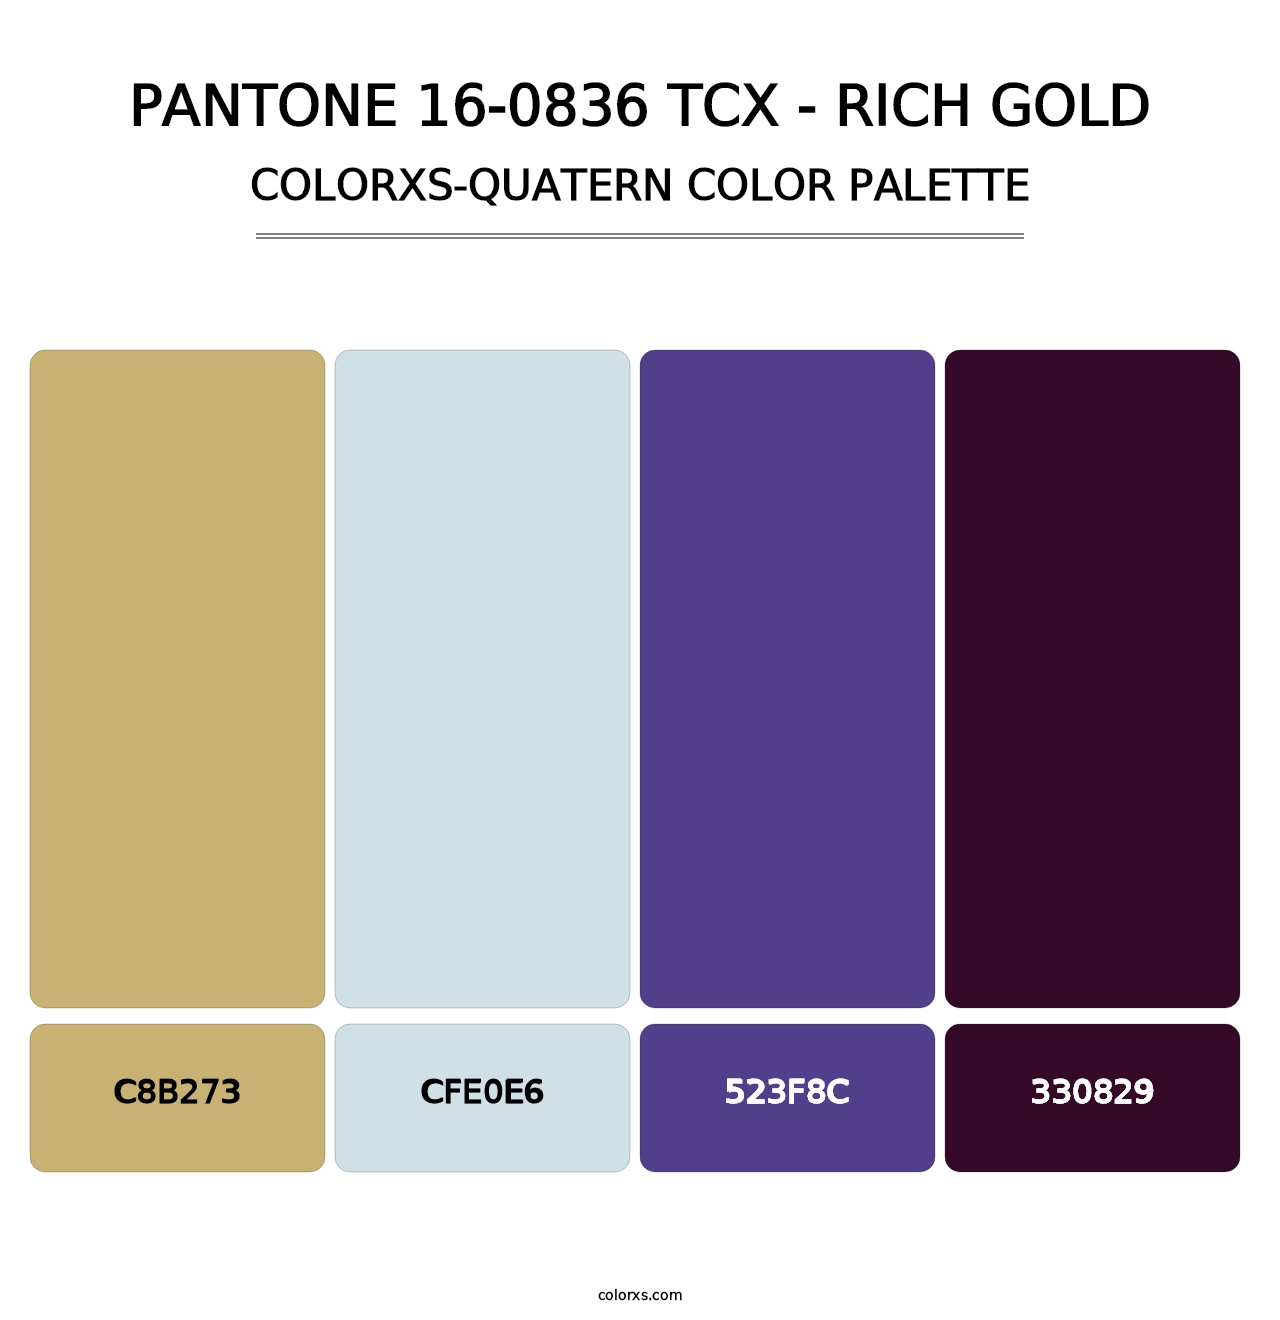 PANTONE 16-0836 TCX - Rich Gold - Colorxs Quatern Palette